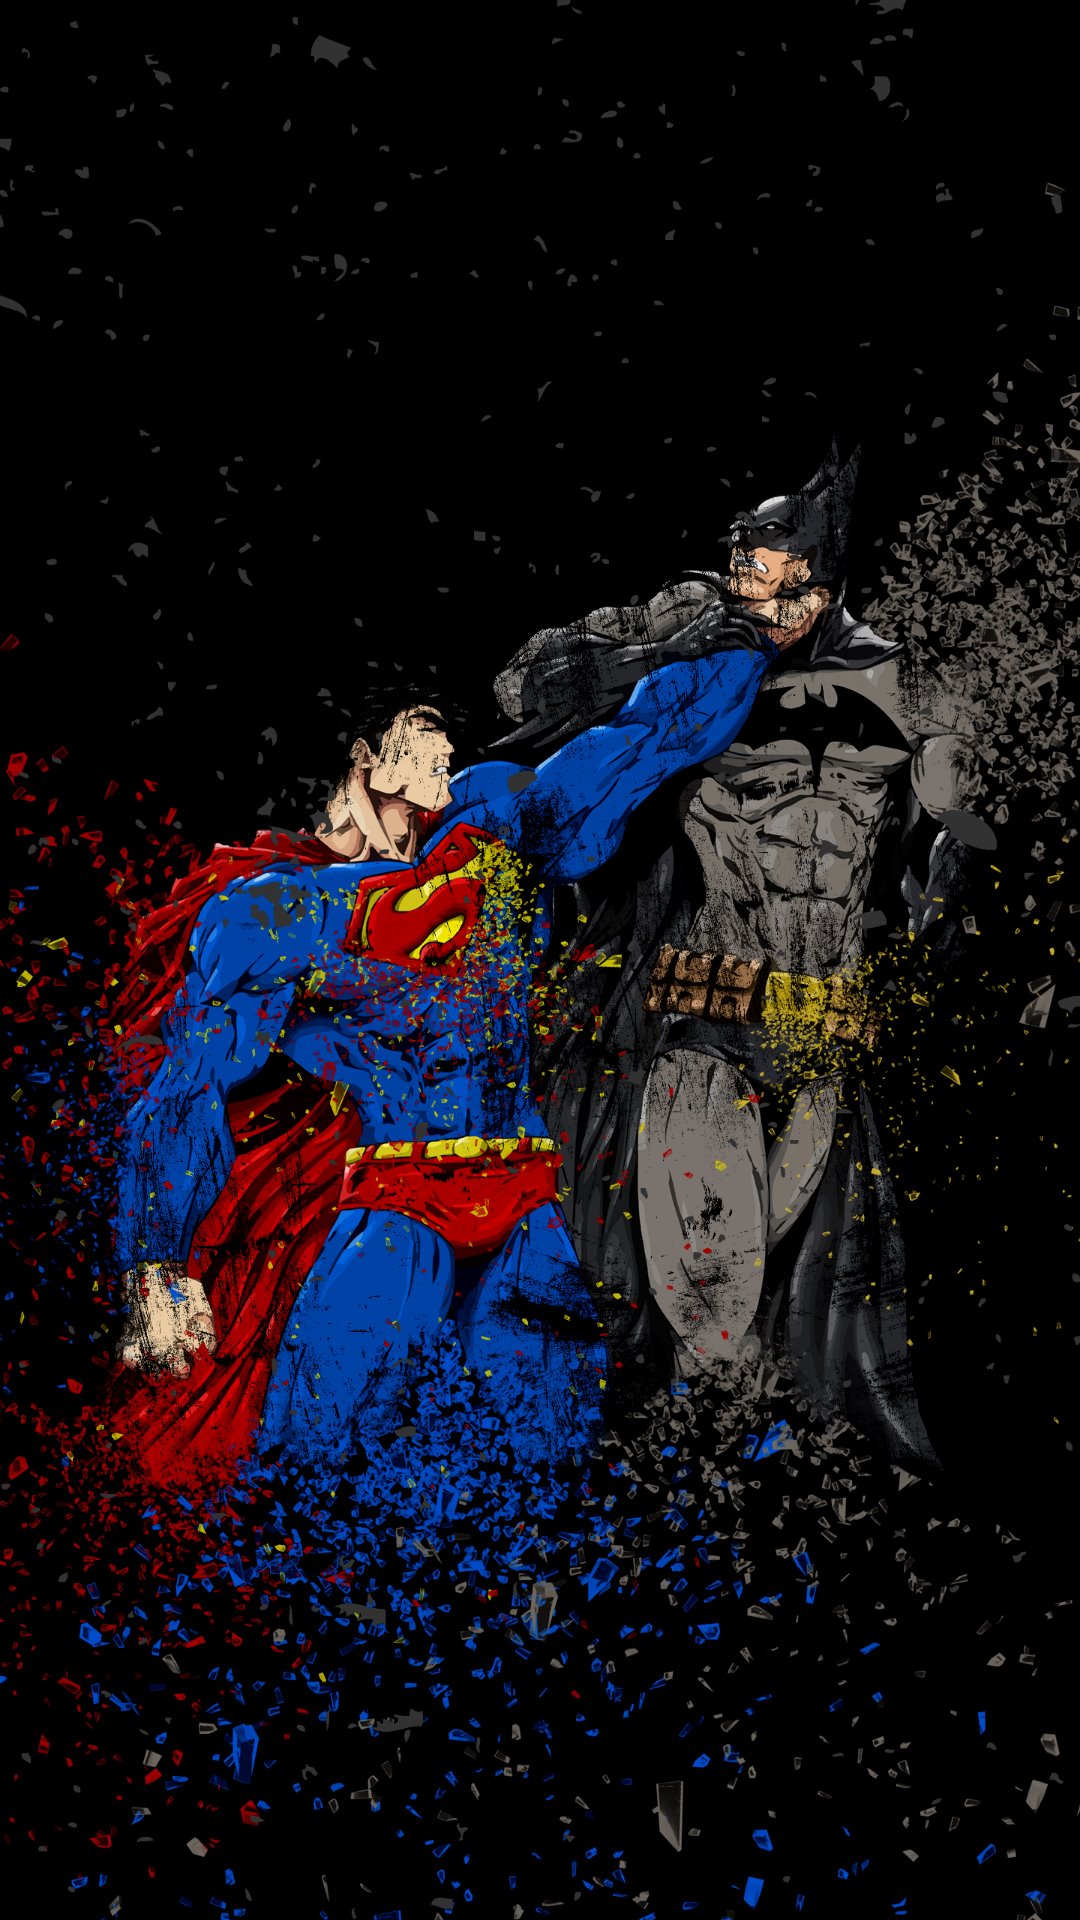 Batman Vs Superman Fight IPhone Wallpaper  IPhone Wallpapers  iPhone  Wallpapers